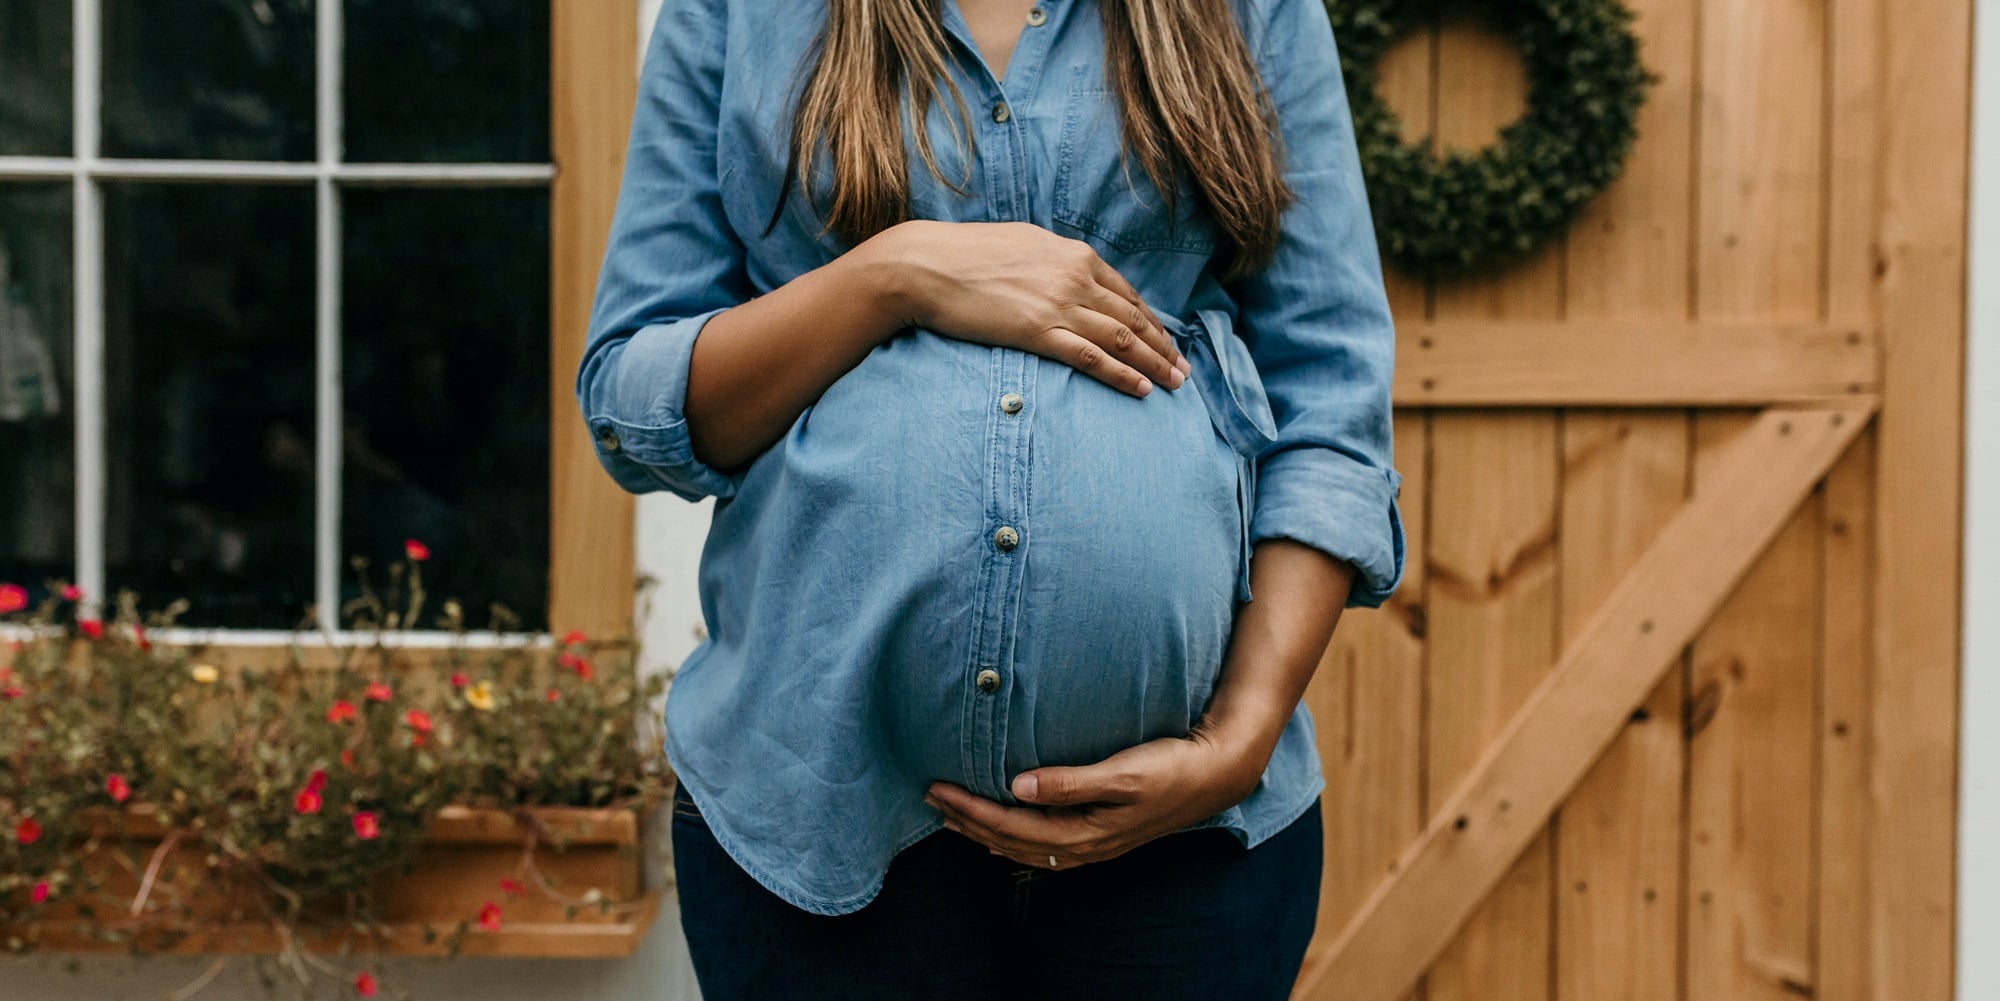 Έγκυος γυναίκα - Άμβλωση